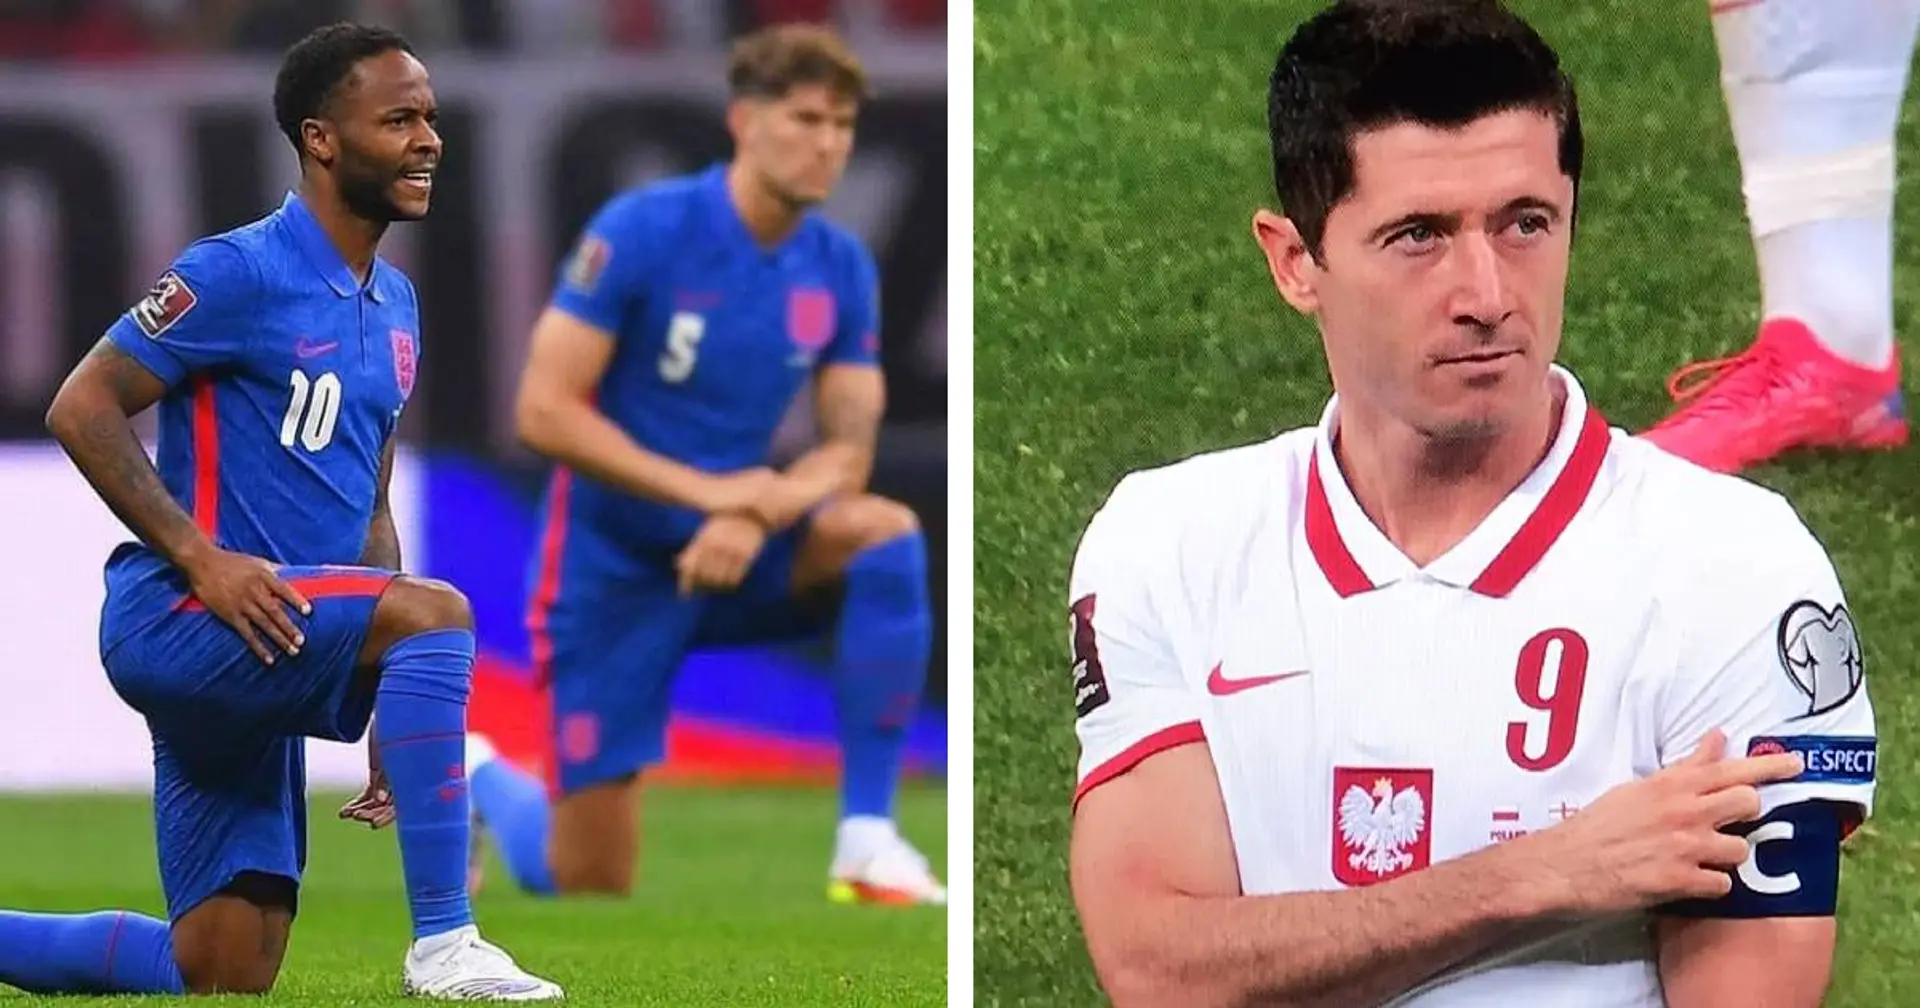 Ehrenmann! Lewandowski zeigt auf Respekt-Badge, während Polen-Fans die Engländer wegen Kniefall ausbuhen